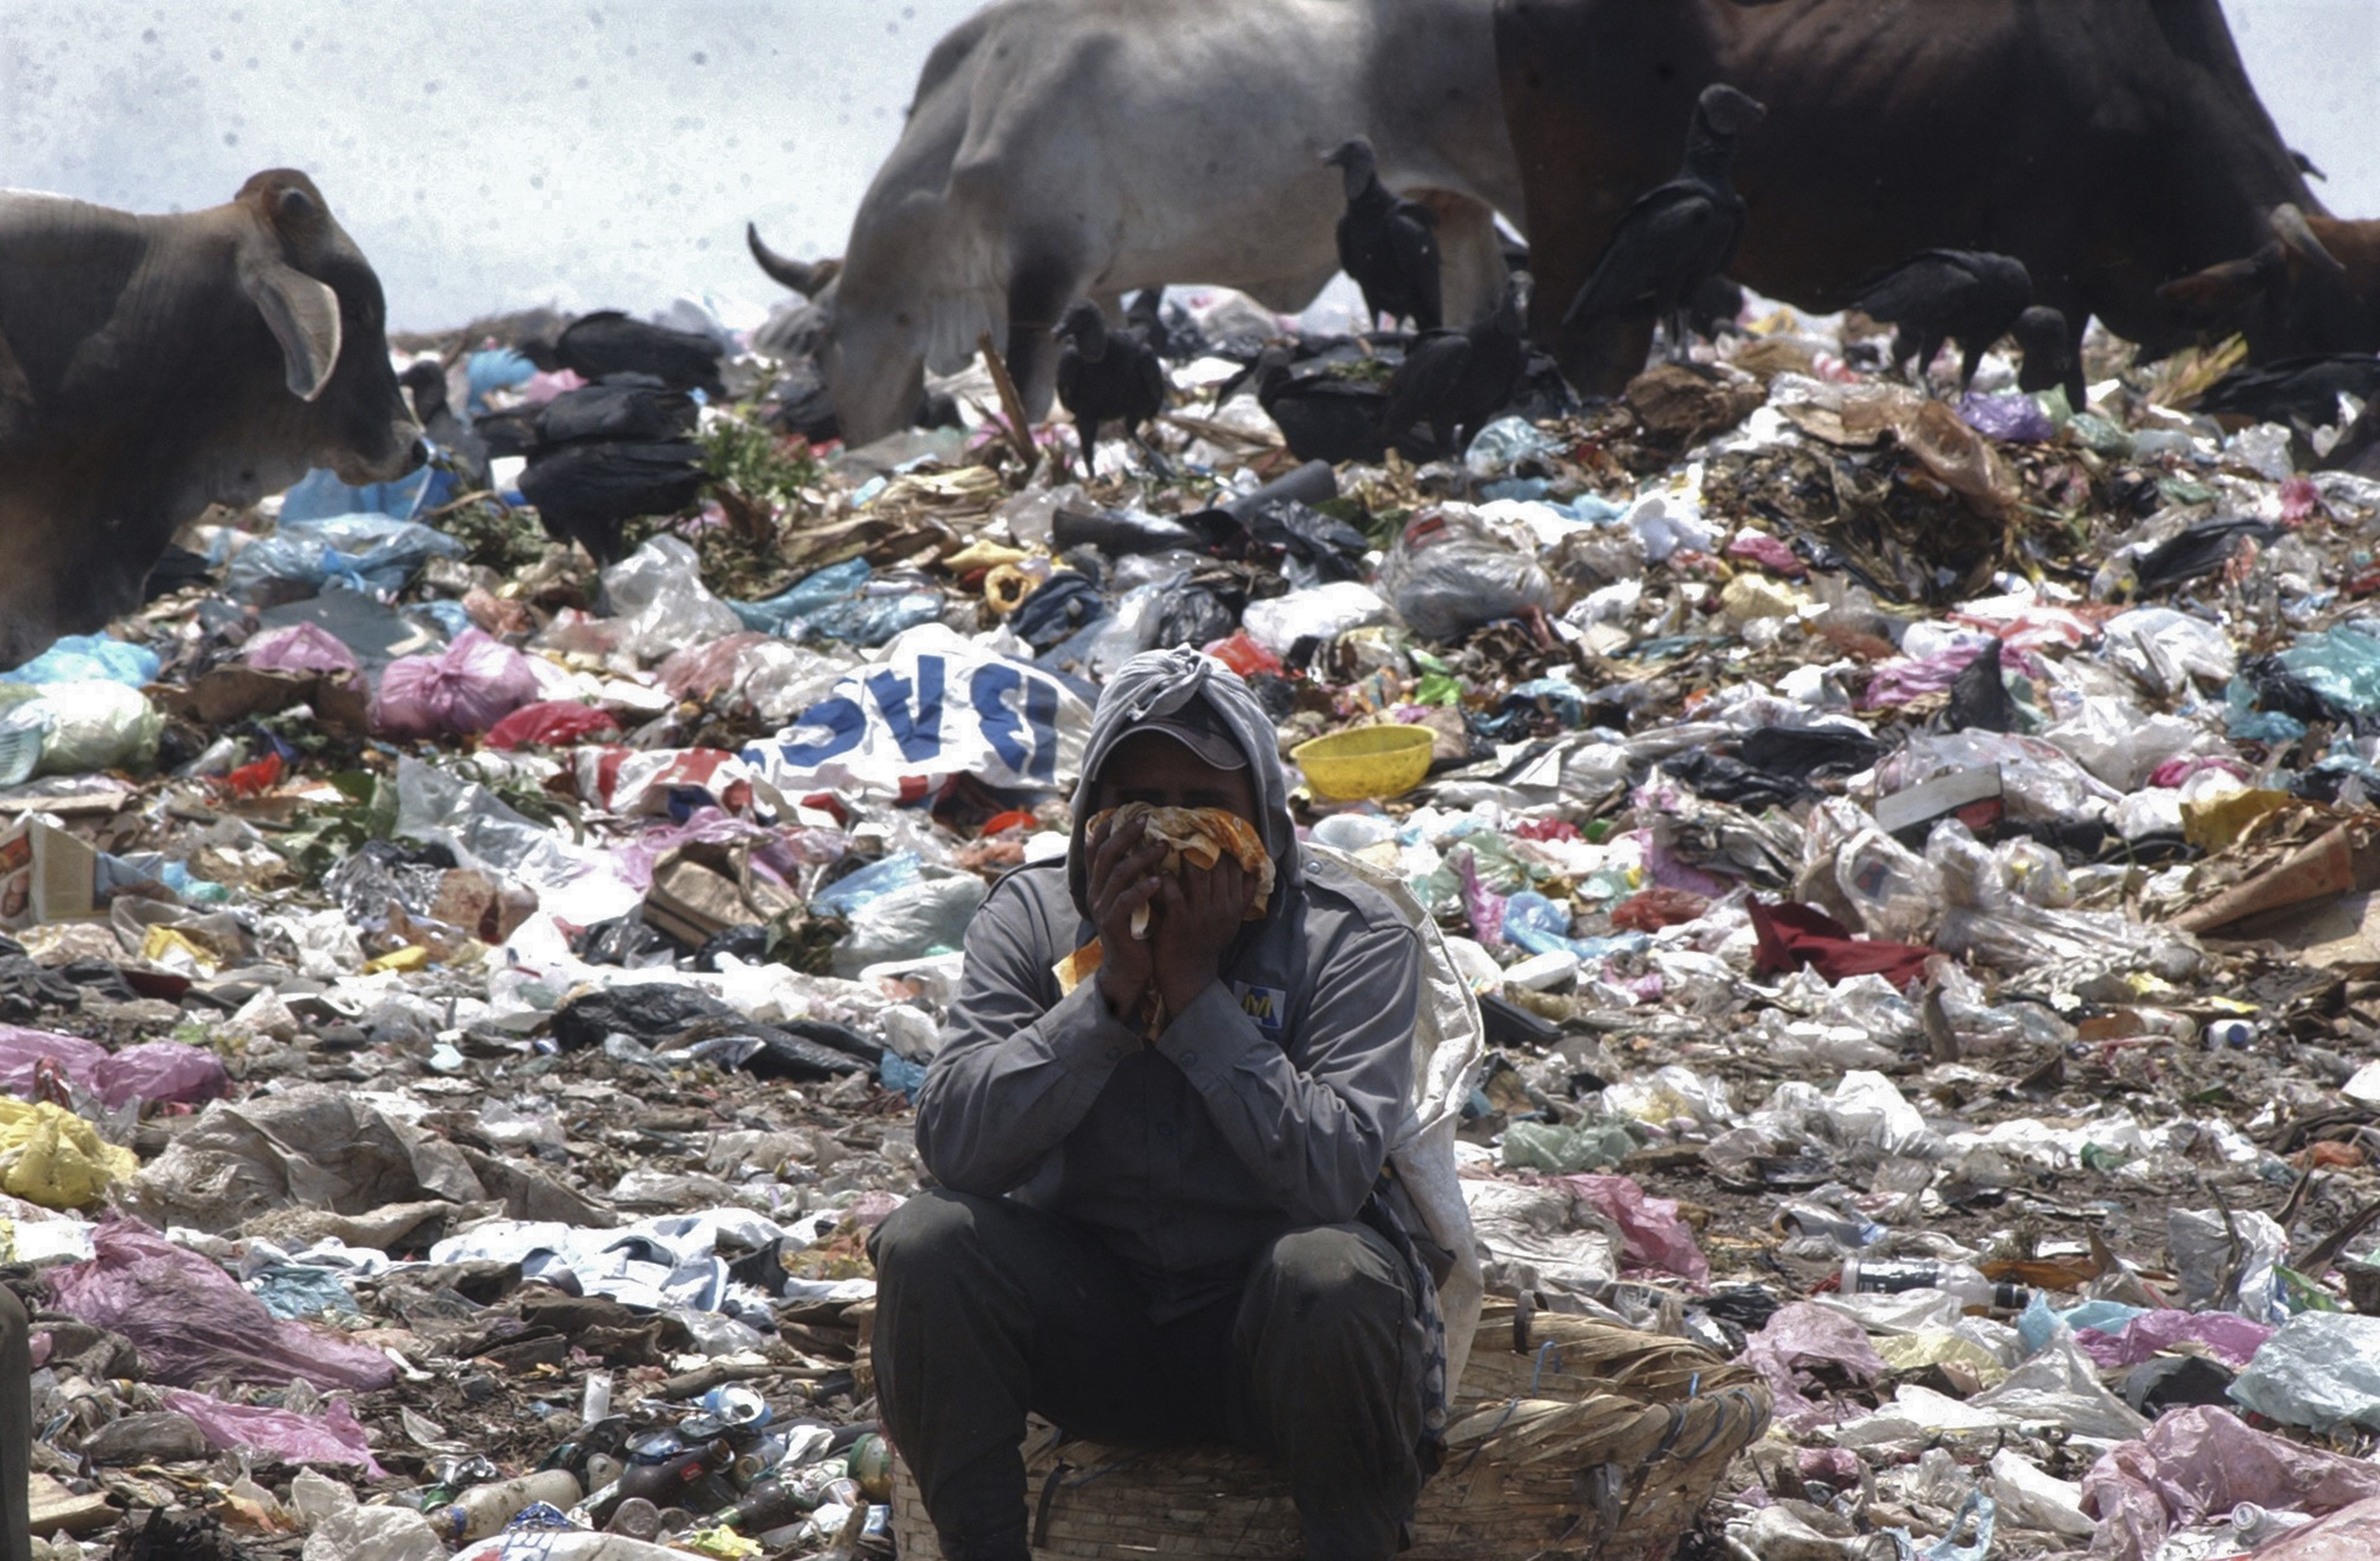 La situación precaria de miles de Nicaraguenses es cada dia mas deplorable,cientos de personas acuden  todos los dias al vertedero de basura mas grande de la capital(managua),conocido como la "chureca a urgar en los desechos algo util, mientras sopilotes y vacas se disputan los desperdicios